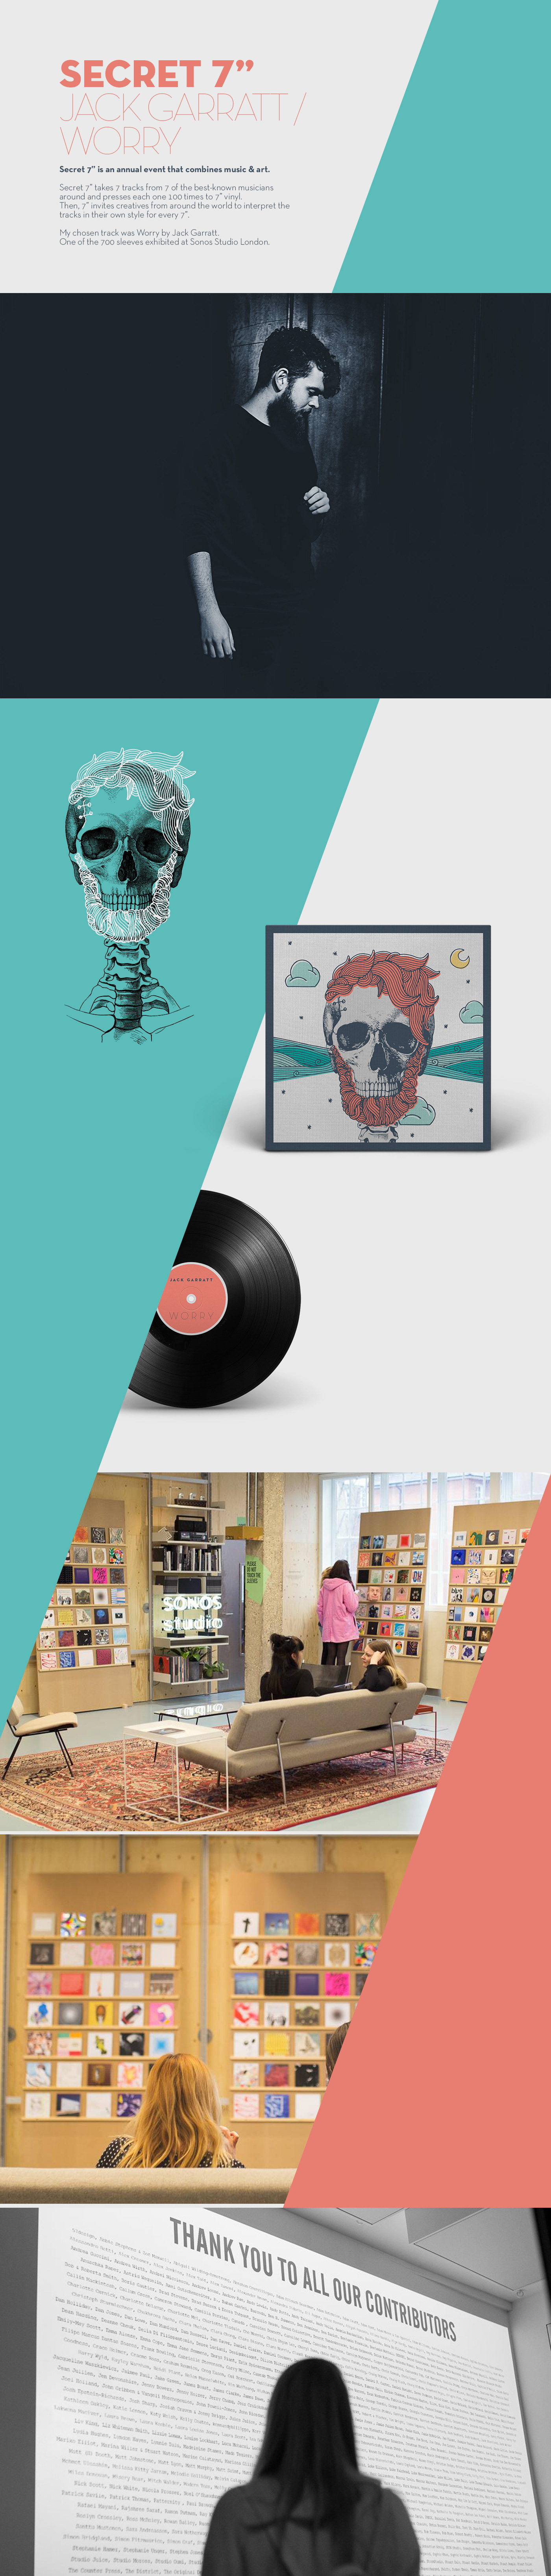 secret 7 cover sleeve Secret 7 2016 Exhibition London sonos studio london Jack Garratt Worry skeleton skull skulls track